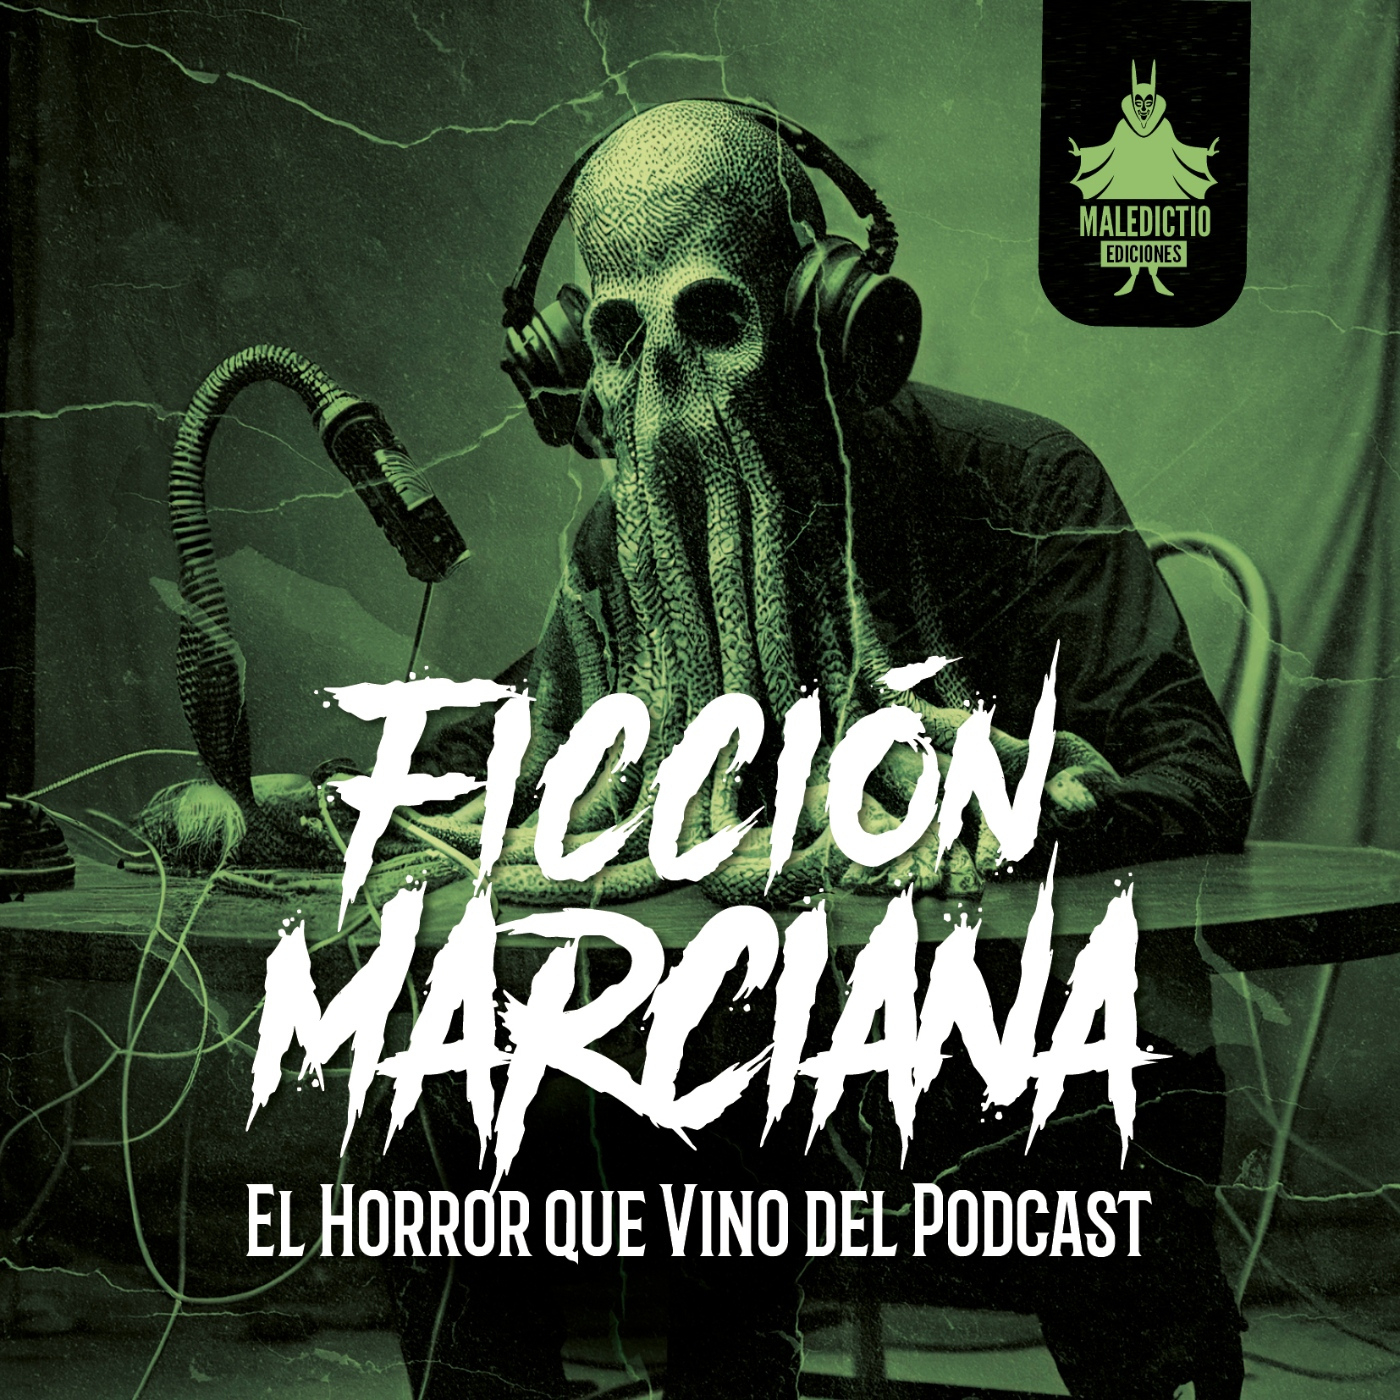 LETRAS MARCIANAS - FM 01. El horror que vino del podcast (VV.AA.)